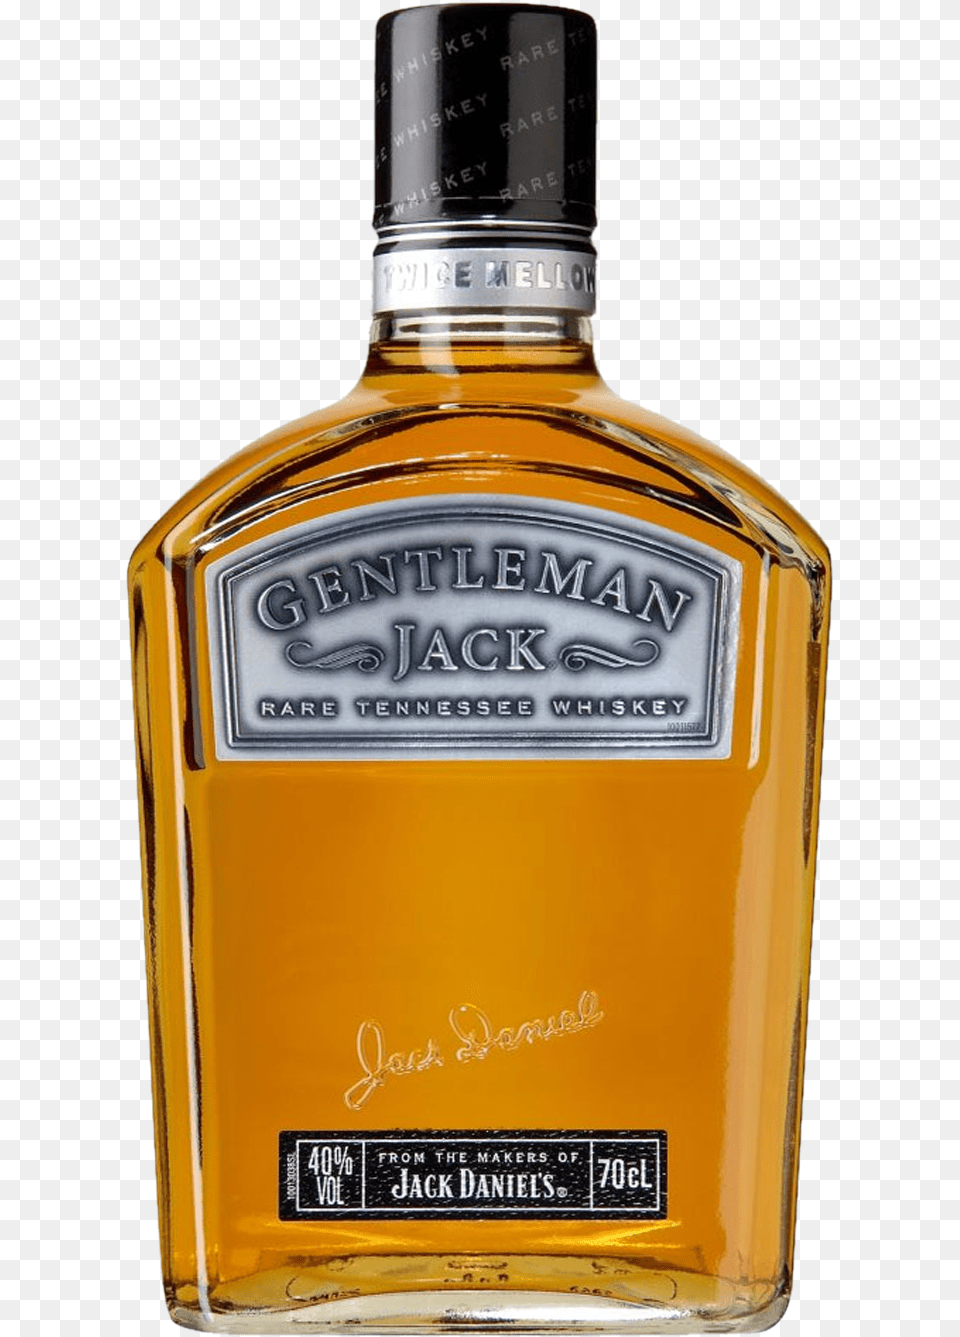 Jack Daniels Gentleman Jack Tesco, Alcohol, Beverage, Liquor, Whisky Free Transparent Png